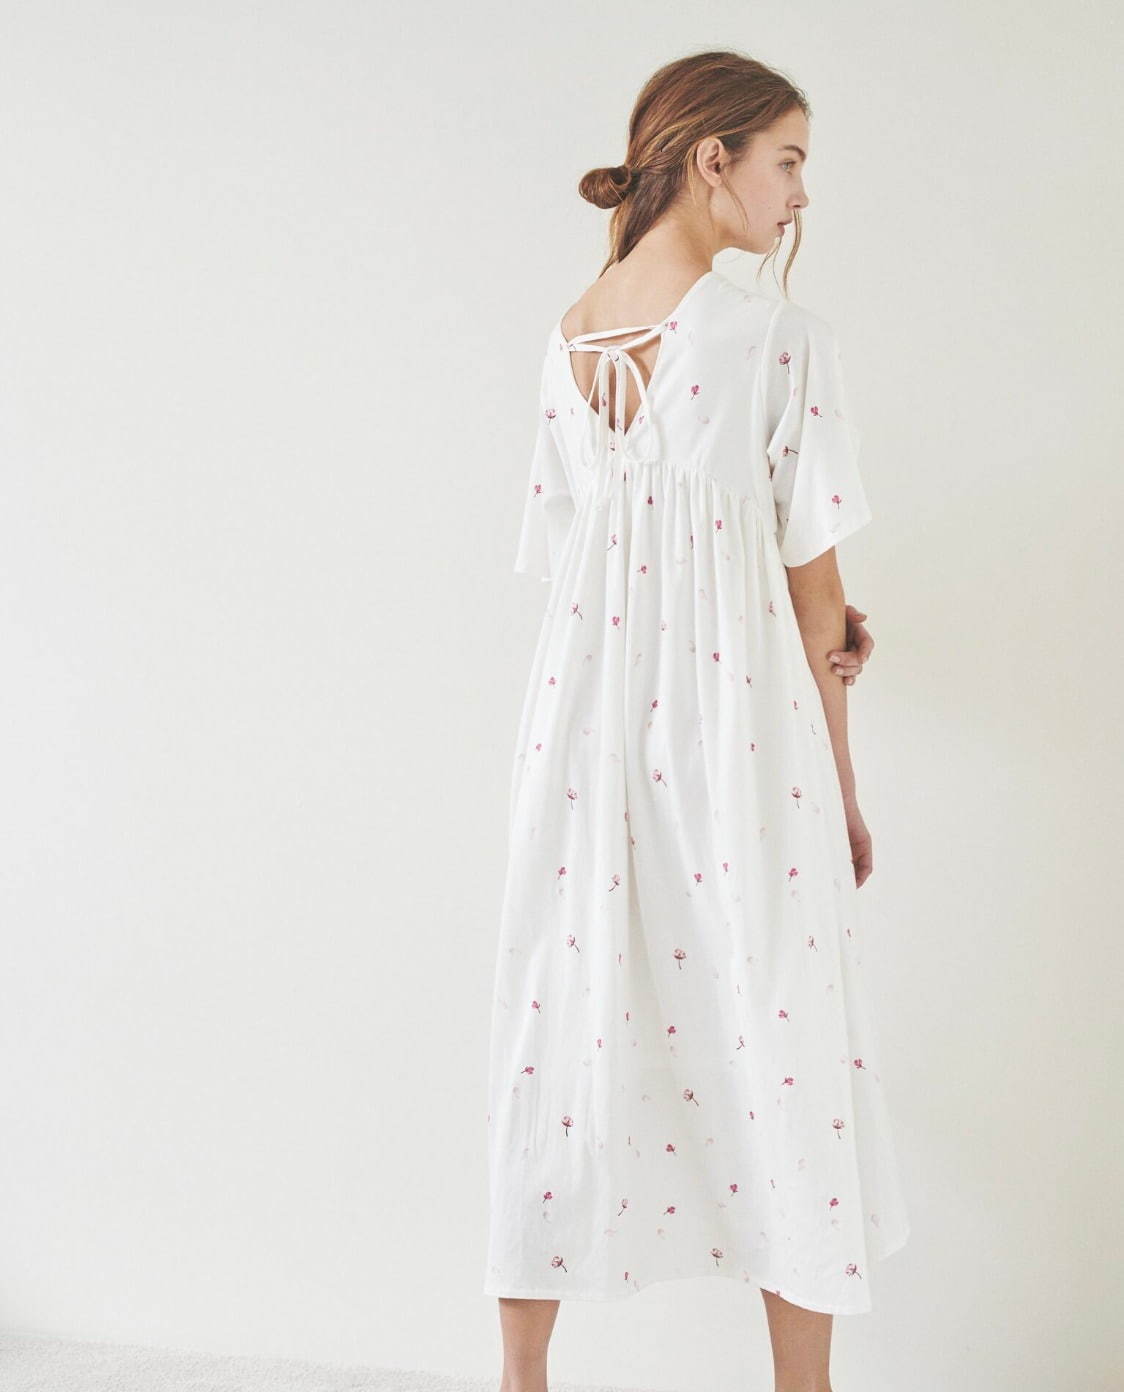 ジェラート ピケ「さくら」モチーフのルームウェア、花びら刺繍入りシャツパジャマ＆サクラロングドレス ファッションプレス